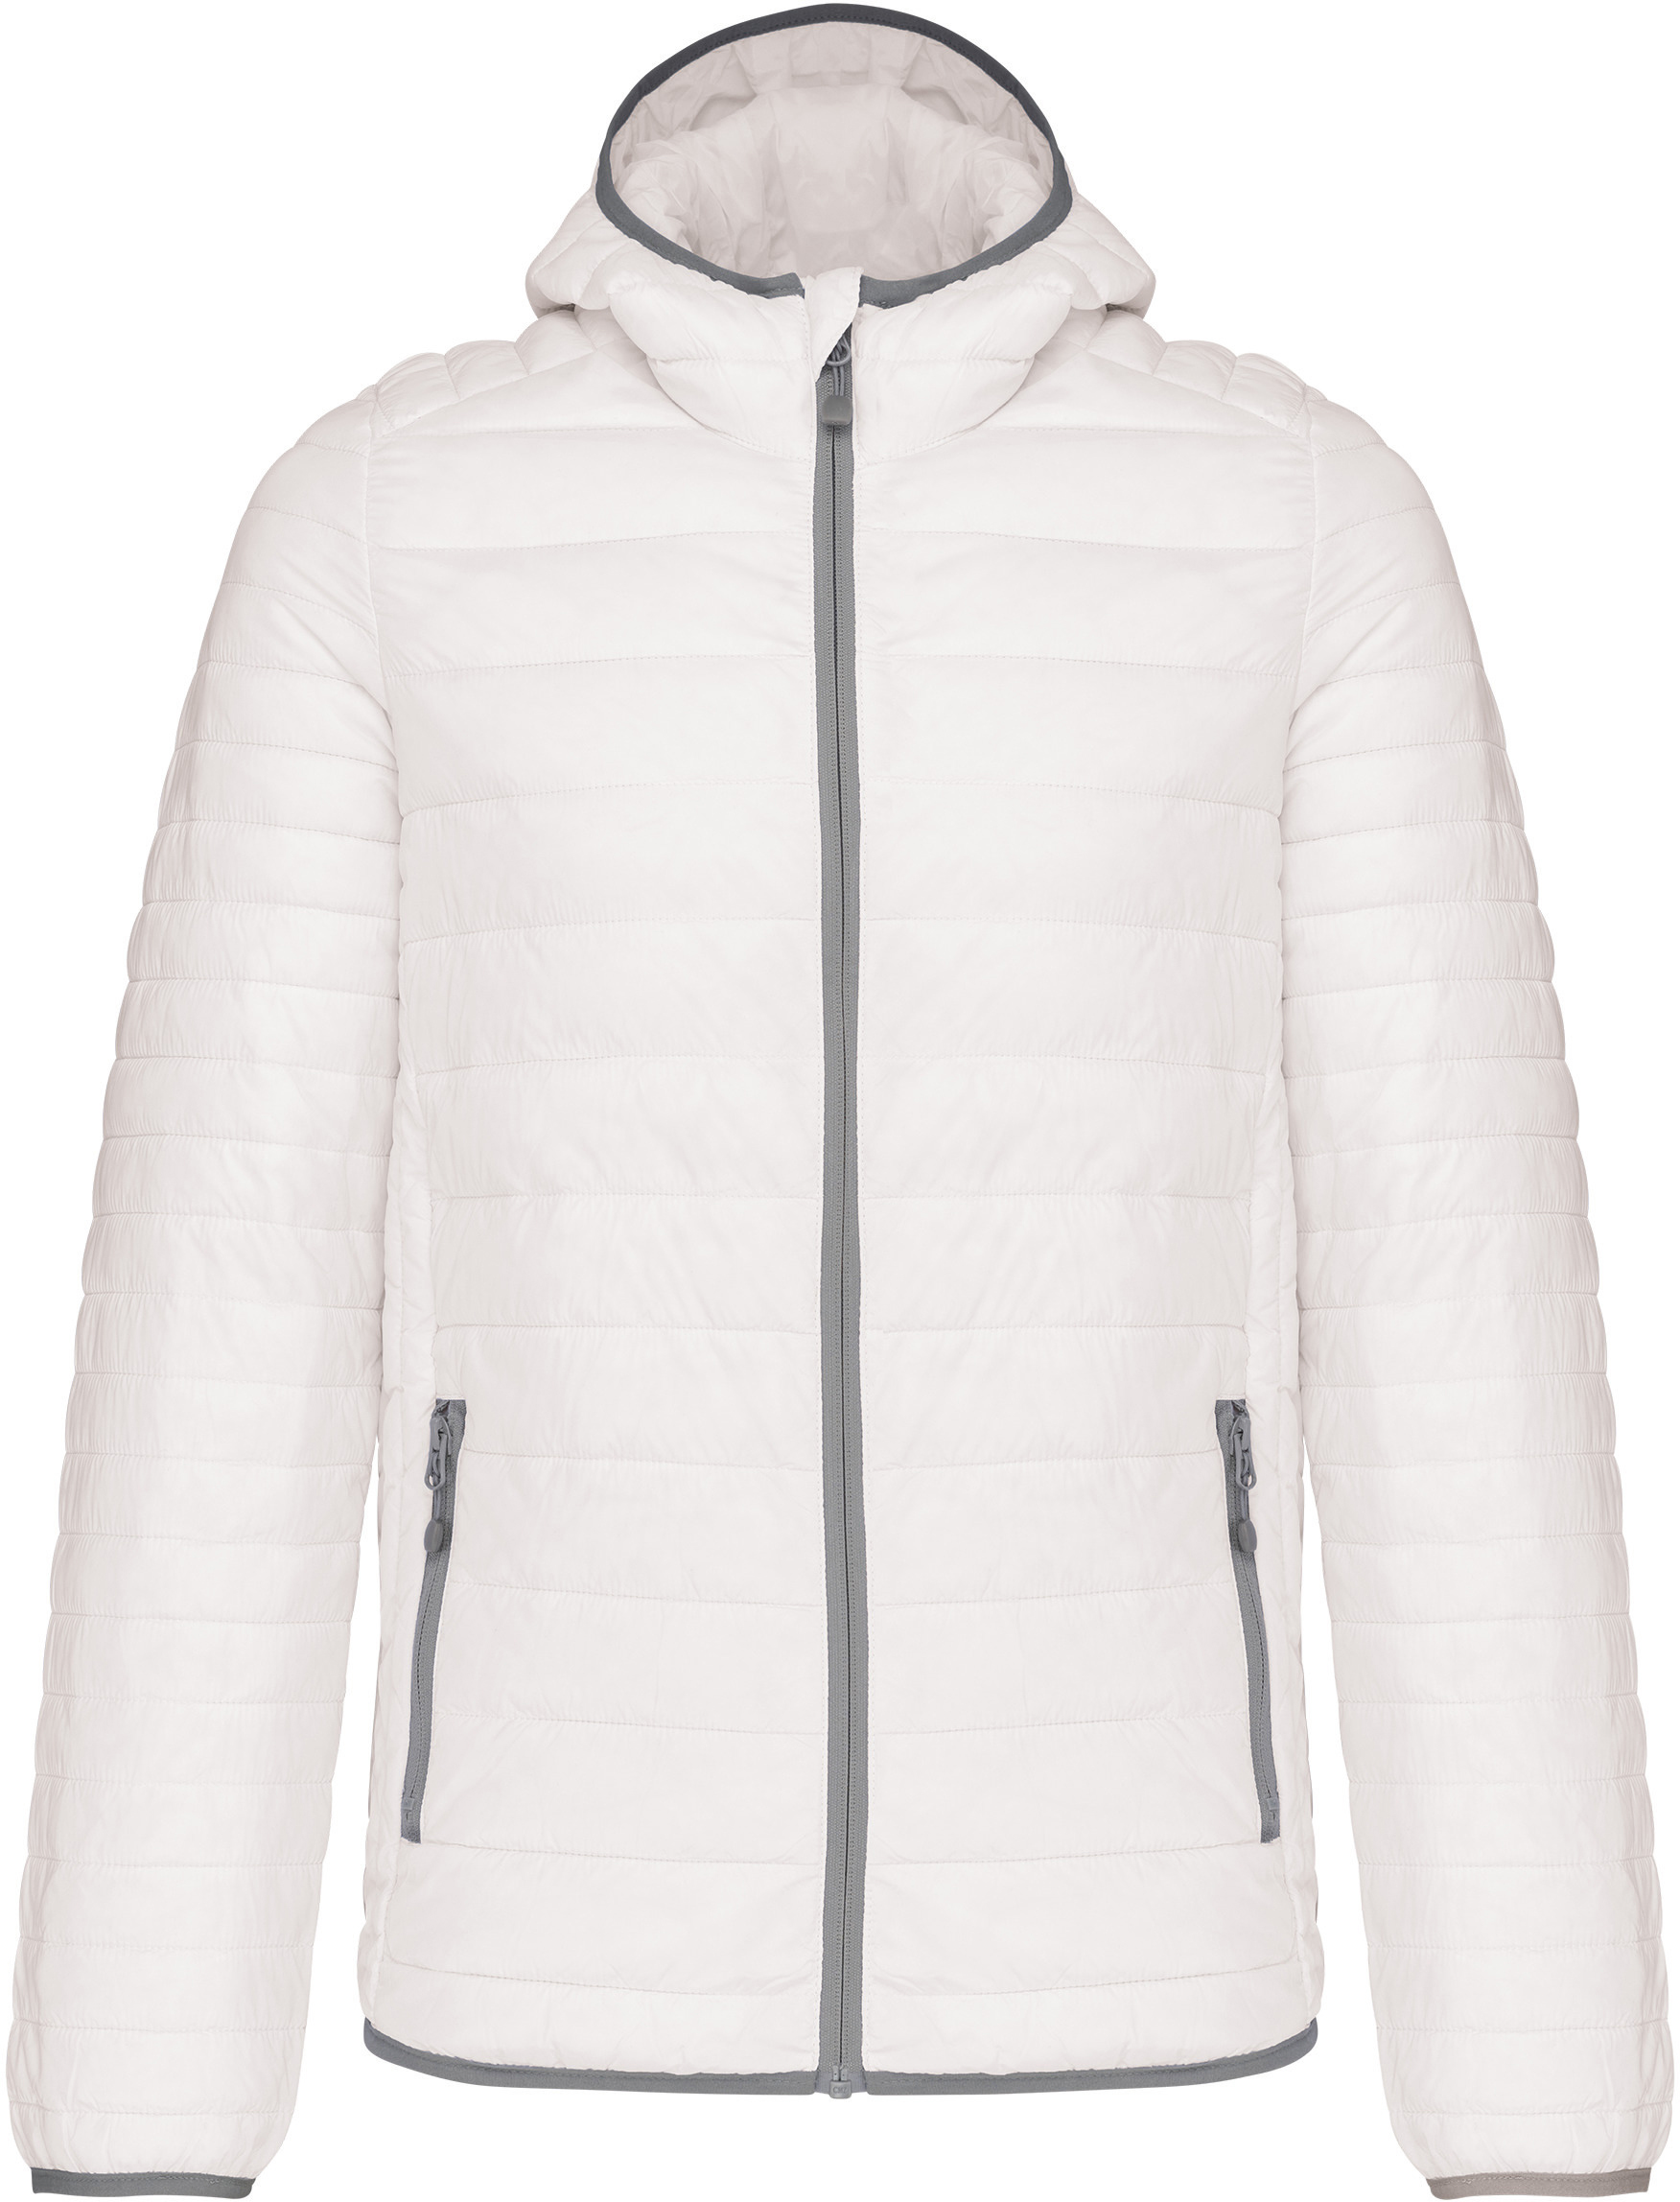 Pánská lehká zateplená bunda Down Jacket K6110 Barva: bílá, Velikost: L